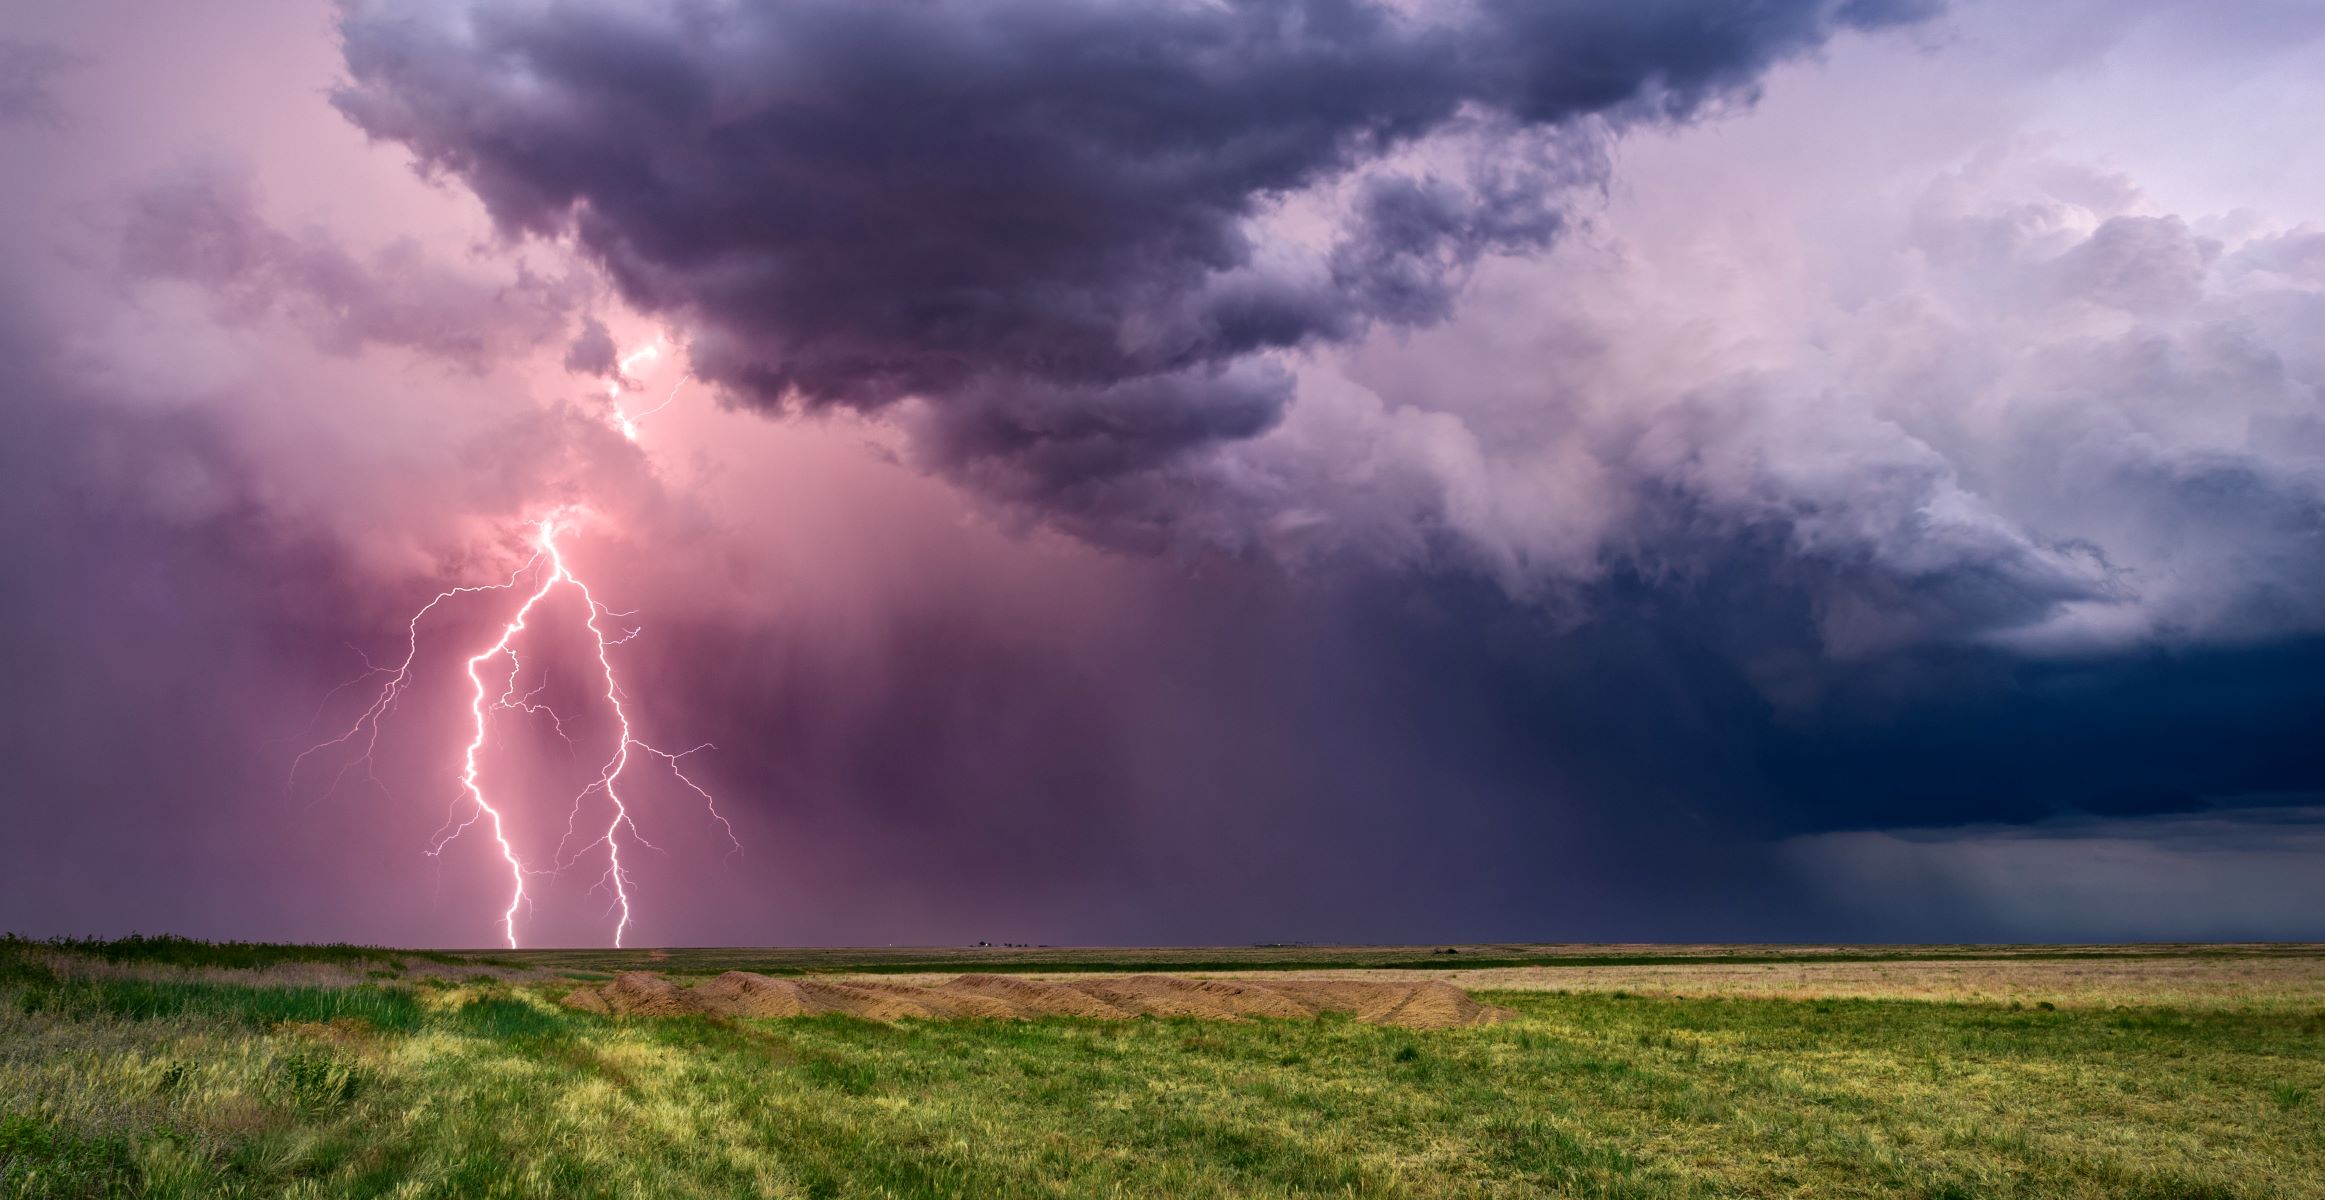 Lightning strike in a field 